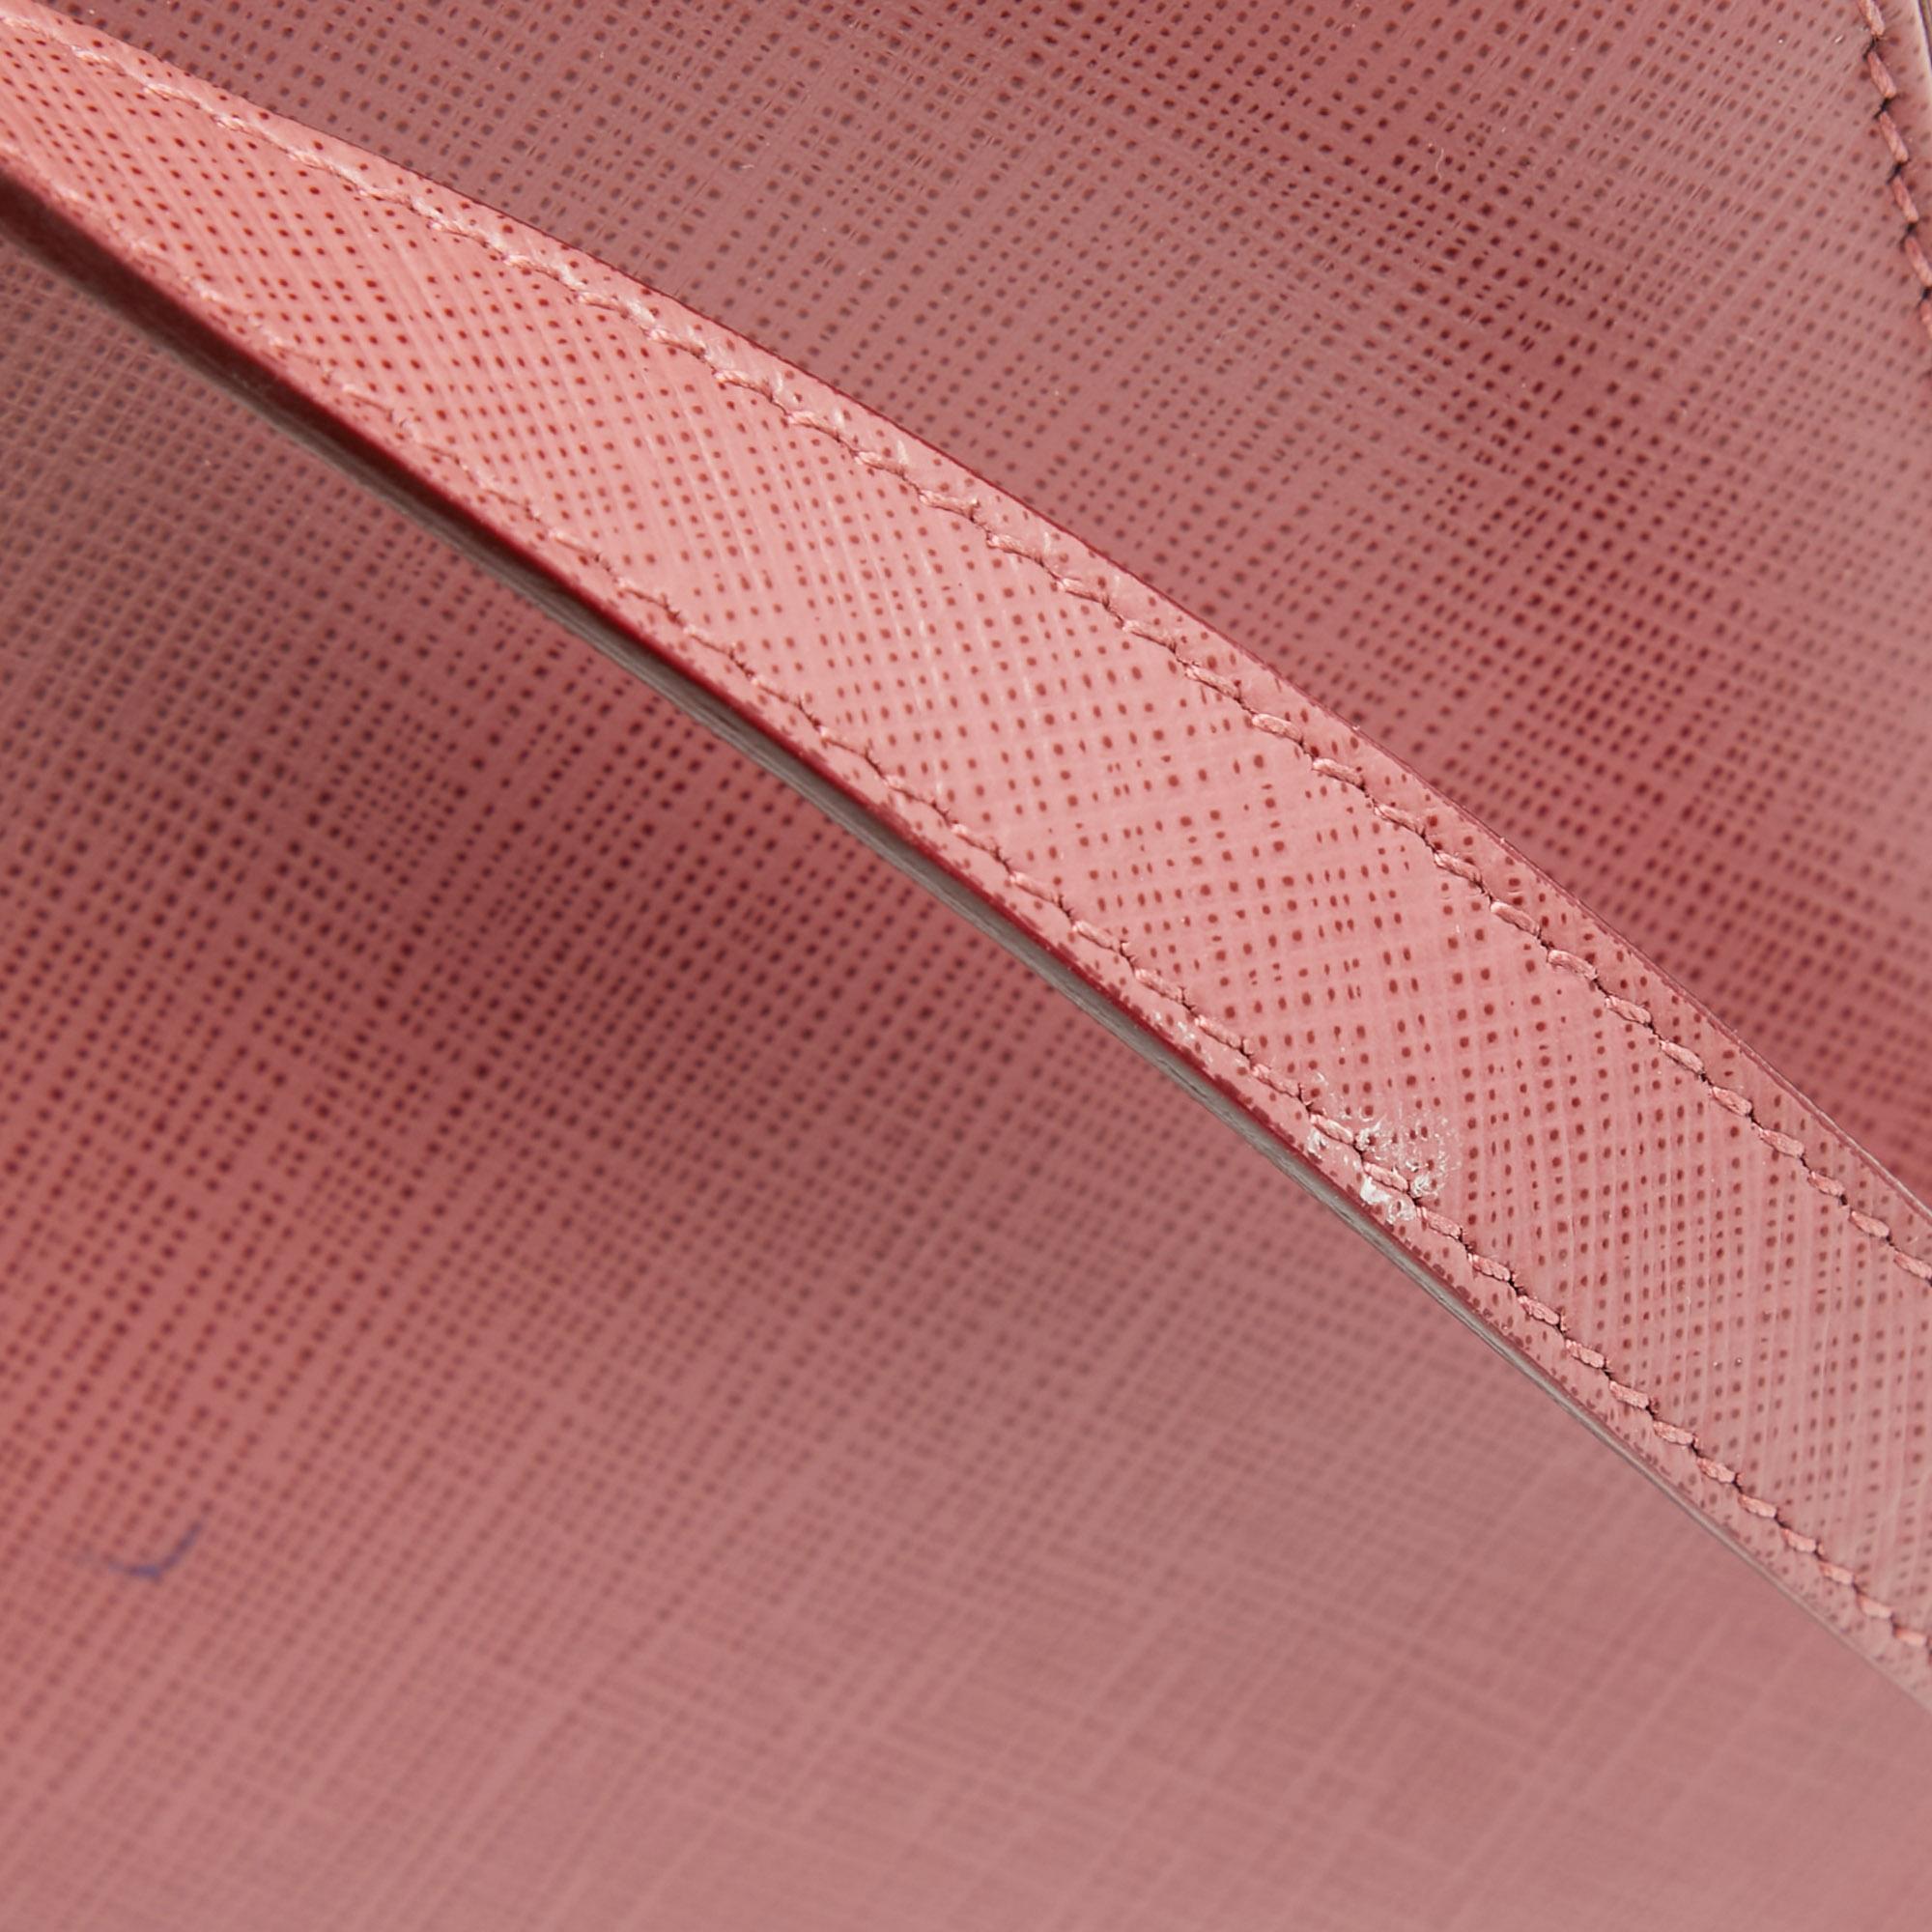 Salvatore Ferragamo Dark Pink Leather Shoulder Bag For Sale 6